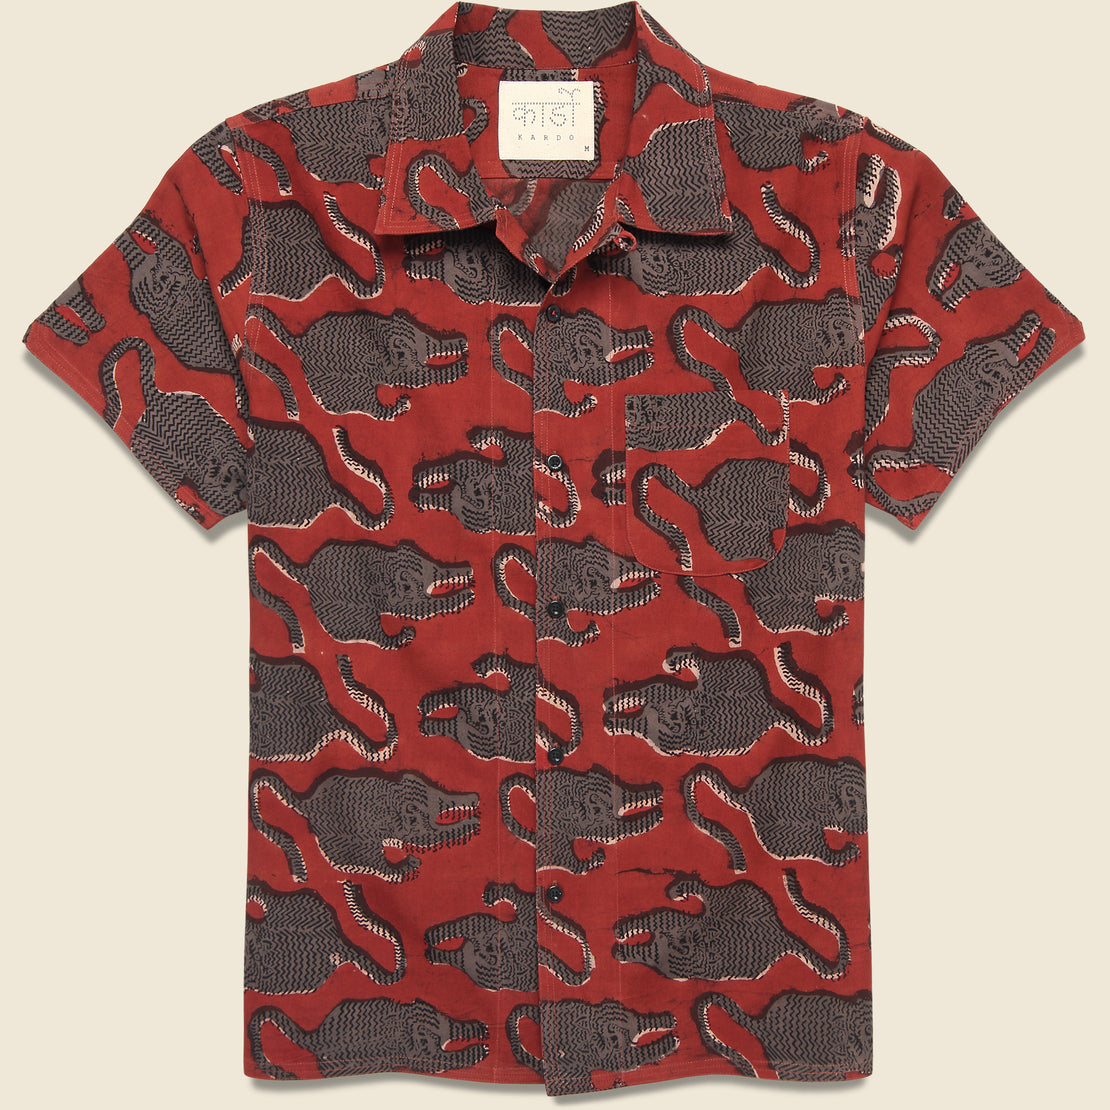 Kardo Tiger Block Print Shirt - Red